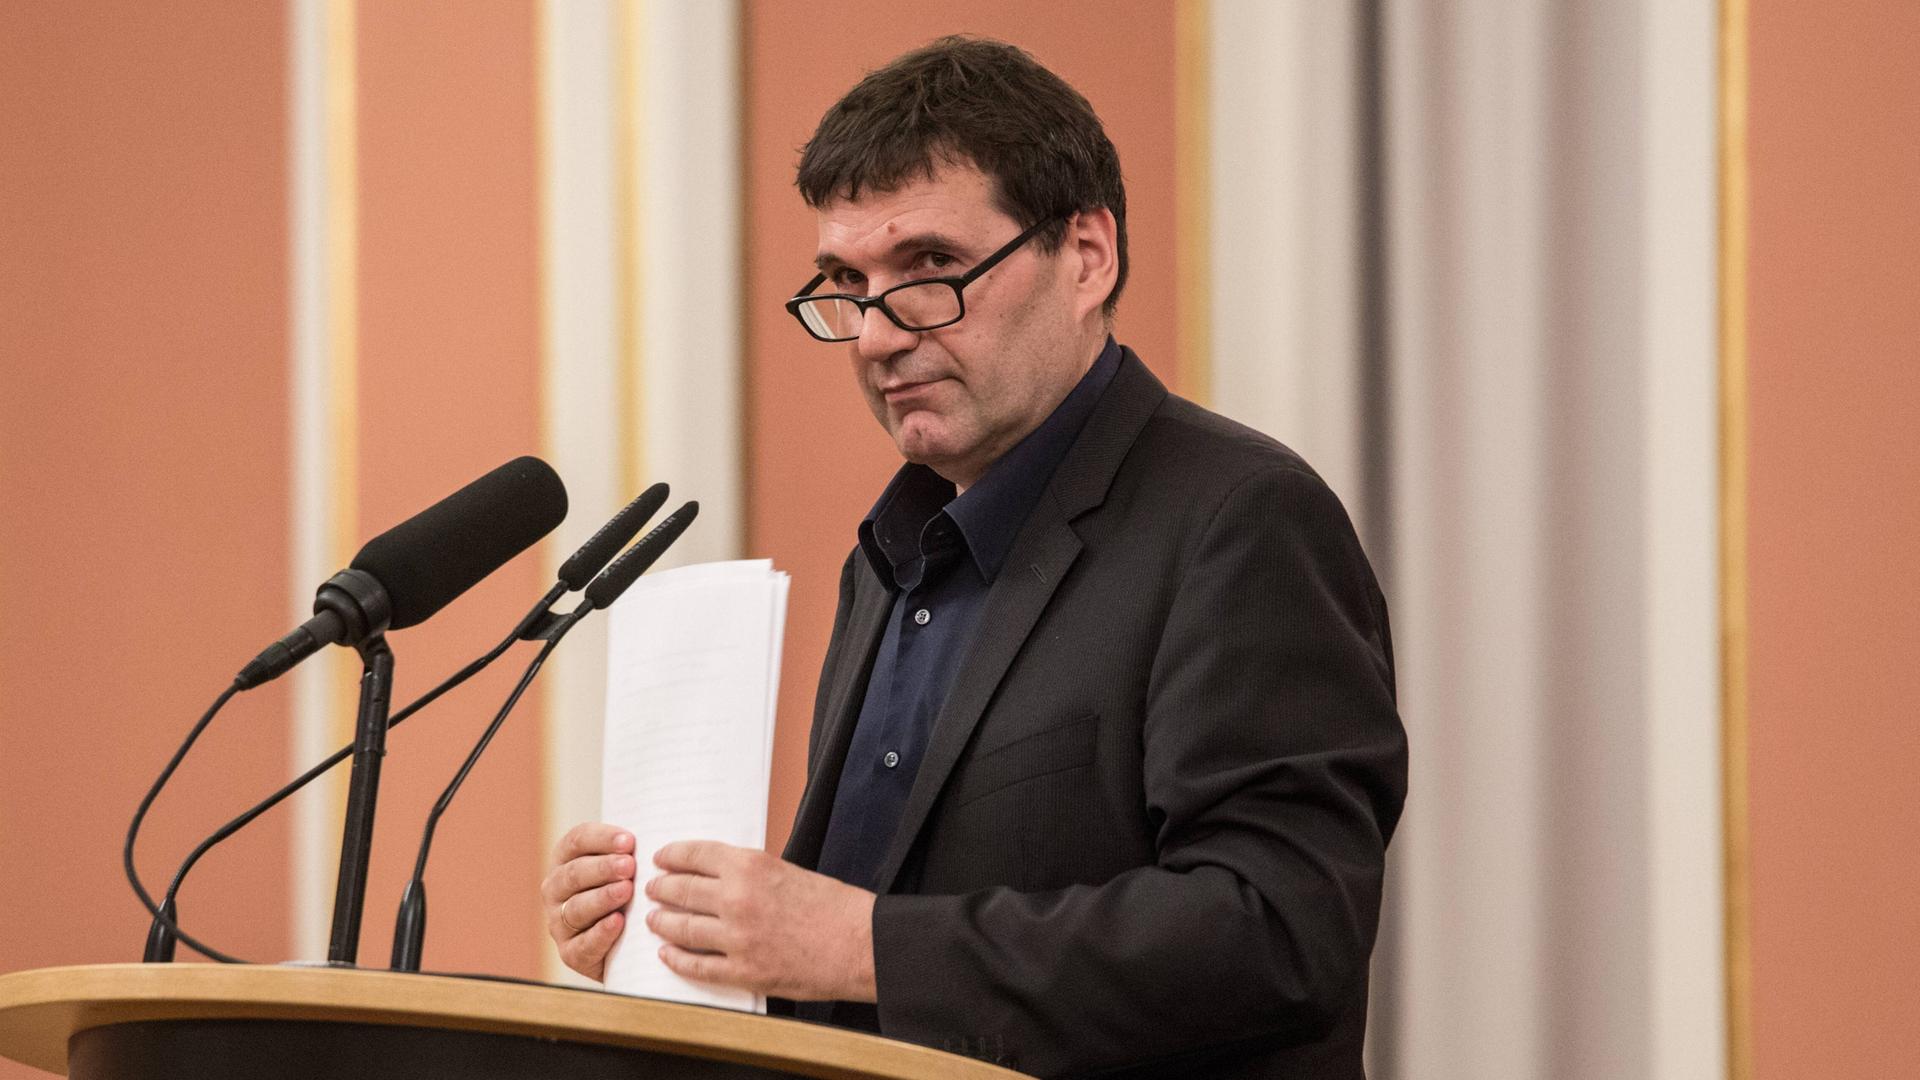 Der Büchner-Preisträger Oswald Egger steht an einem Rednerpult vor Mikrofonen und hält Papier in der Hand.